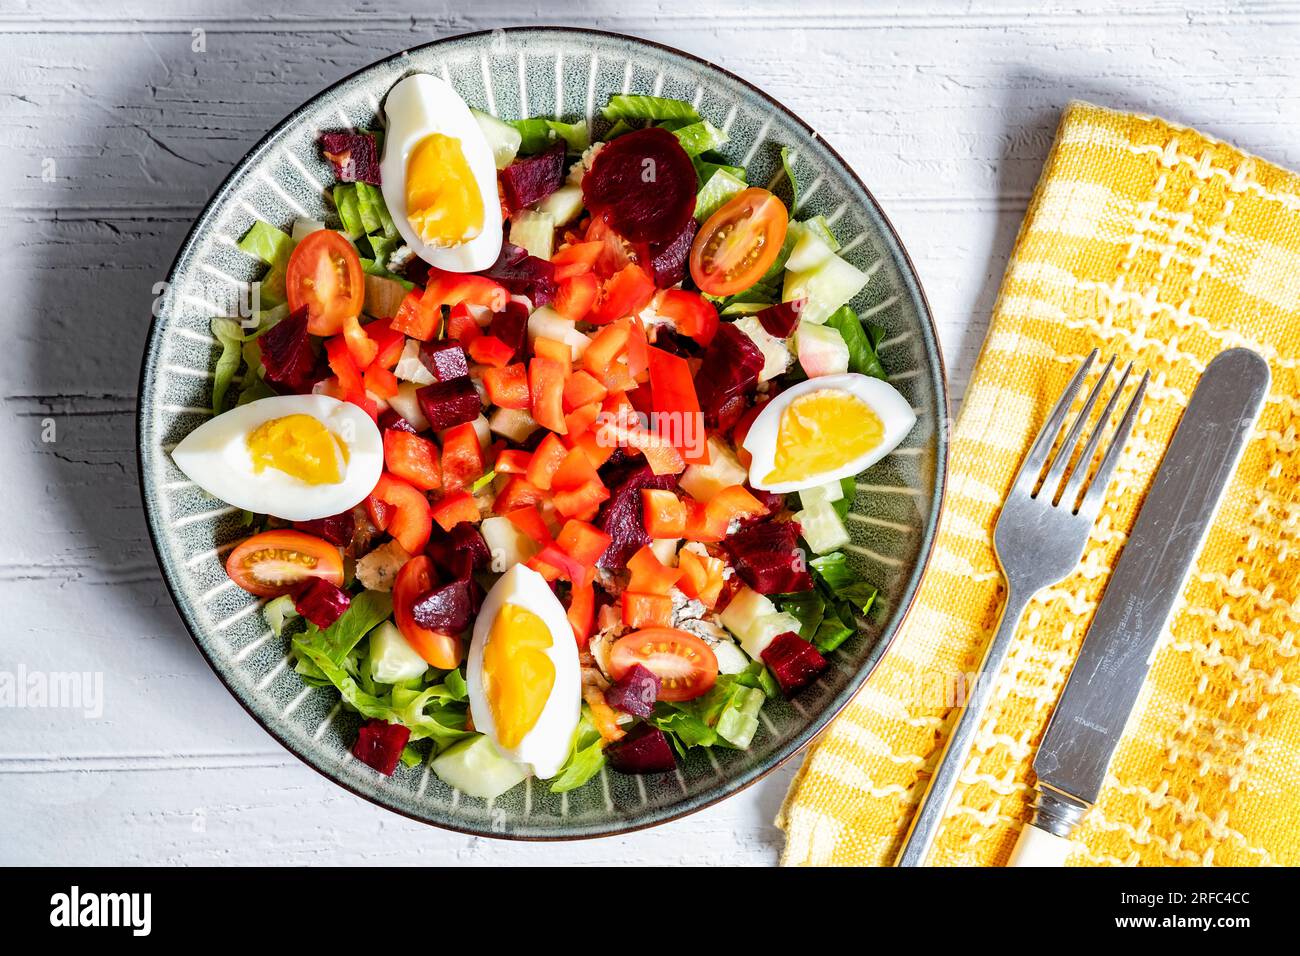 Un'insalata sana della dieta mediterranea servita in una ciotola contenente ingredienti colorati per insalata, tra cui pomodoro peperoni barbabietola, uova e lattuga. Foto Stock